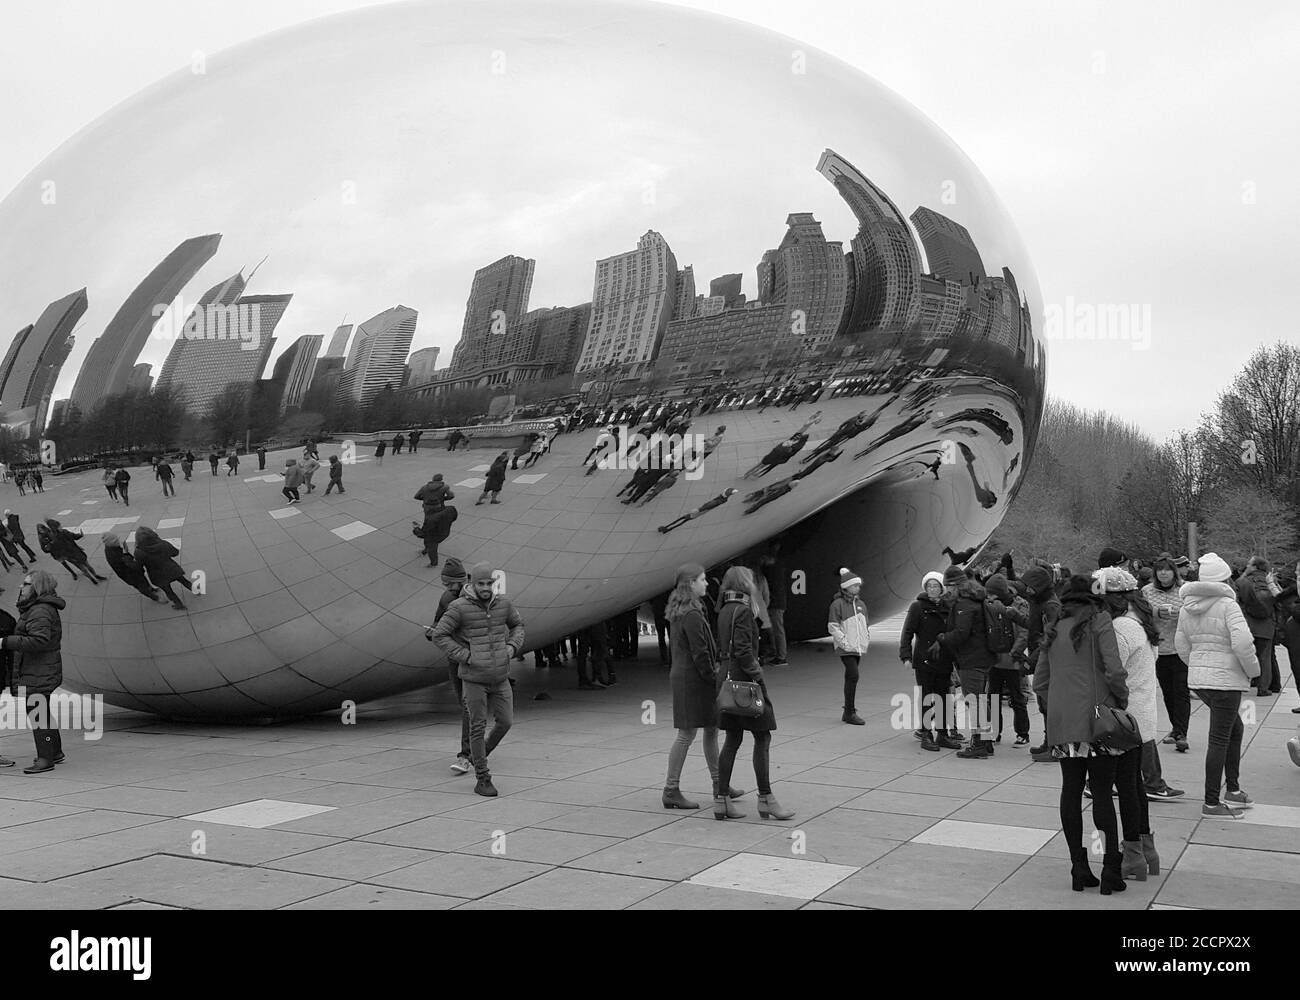 Cloud Gate, une sculpture publique en acier inoxydable également connue sous le nom de « The Bean » à Millennium Park, Chicago Illinois, États-Unis Banque D'Images